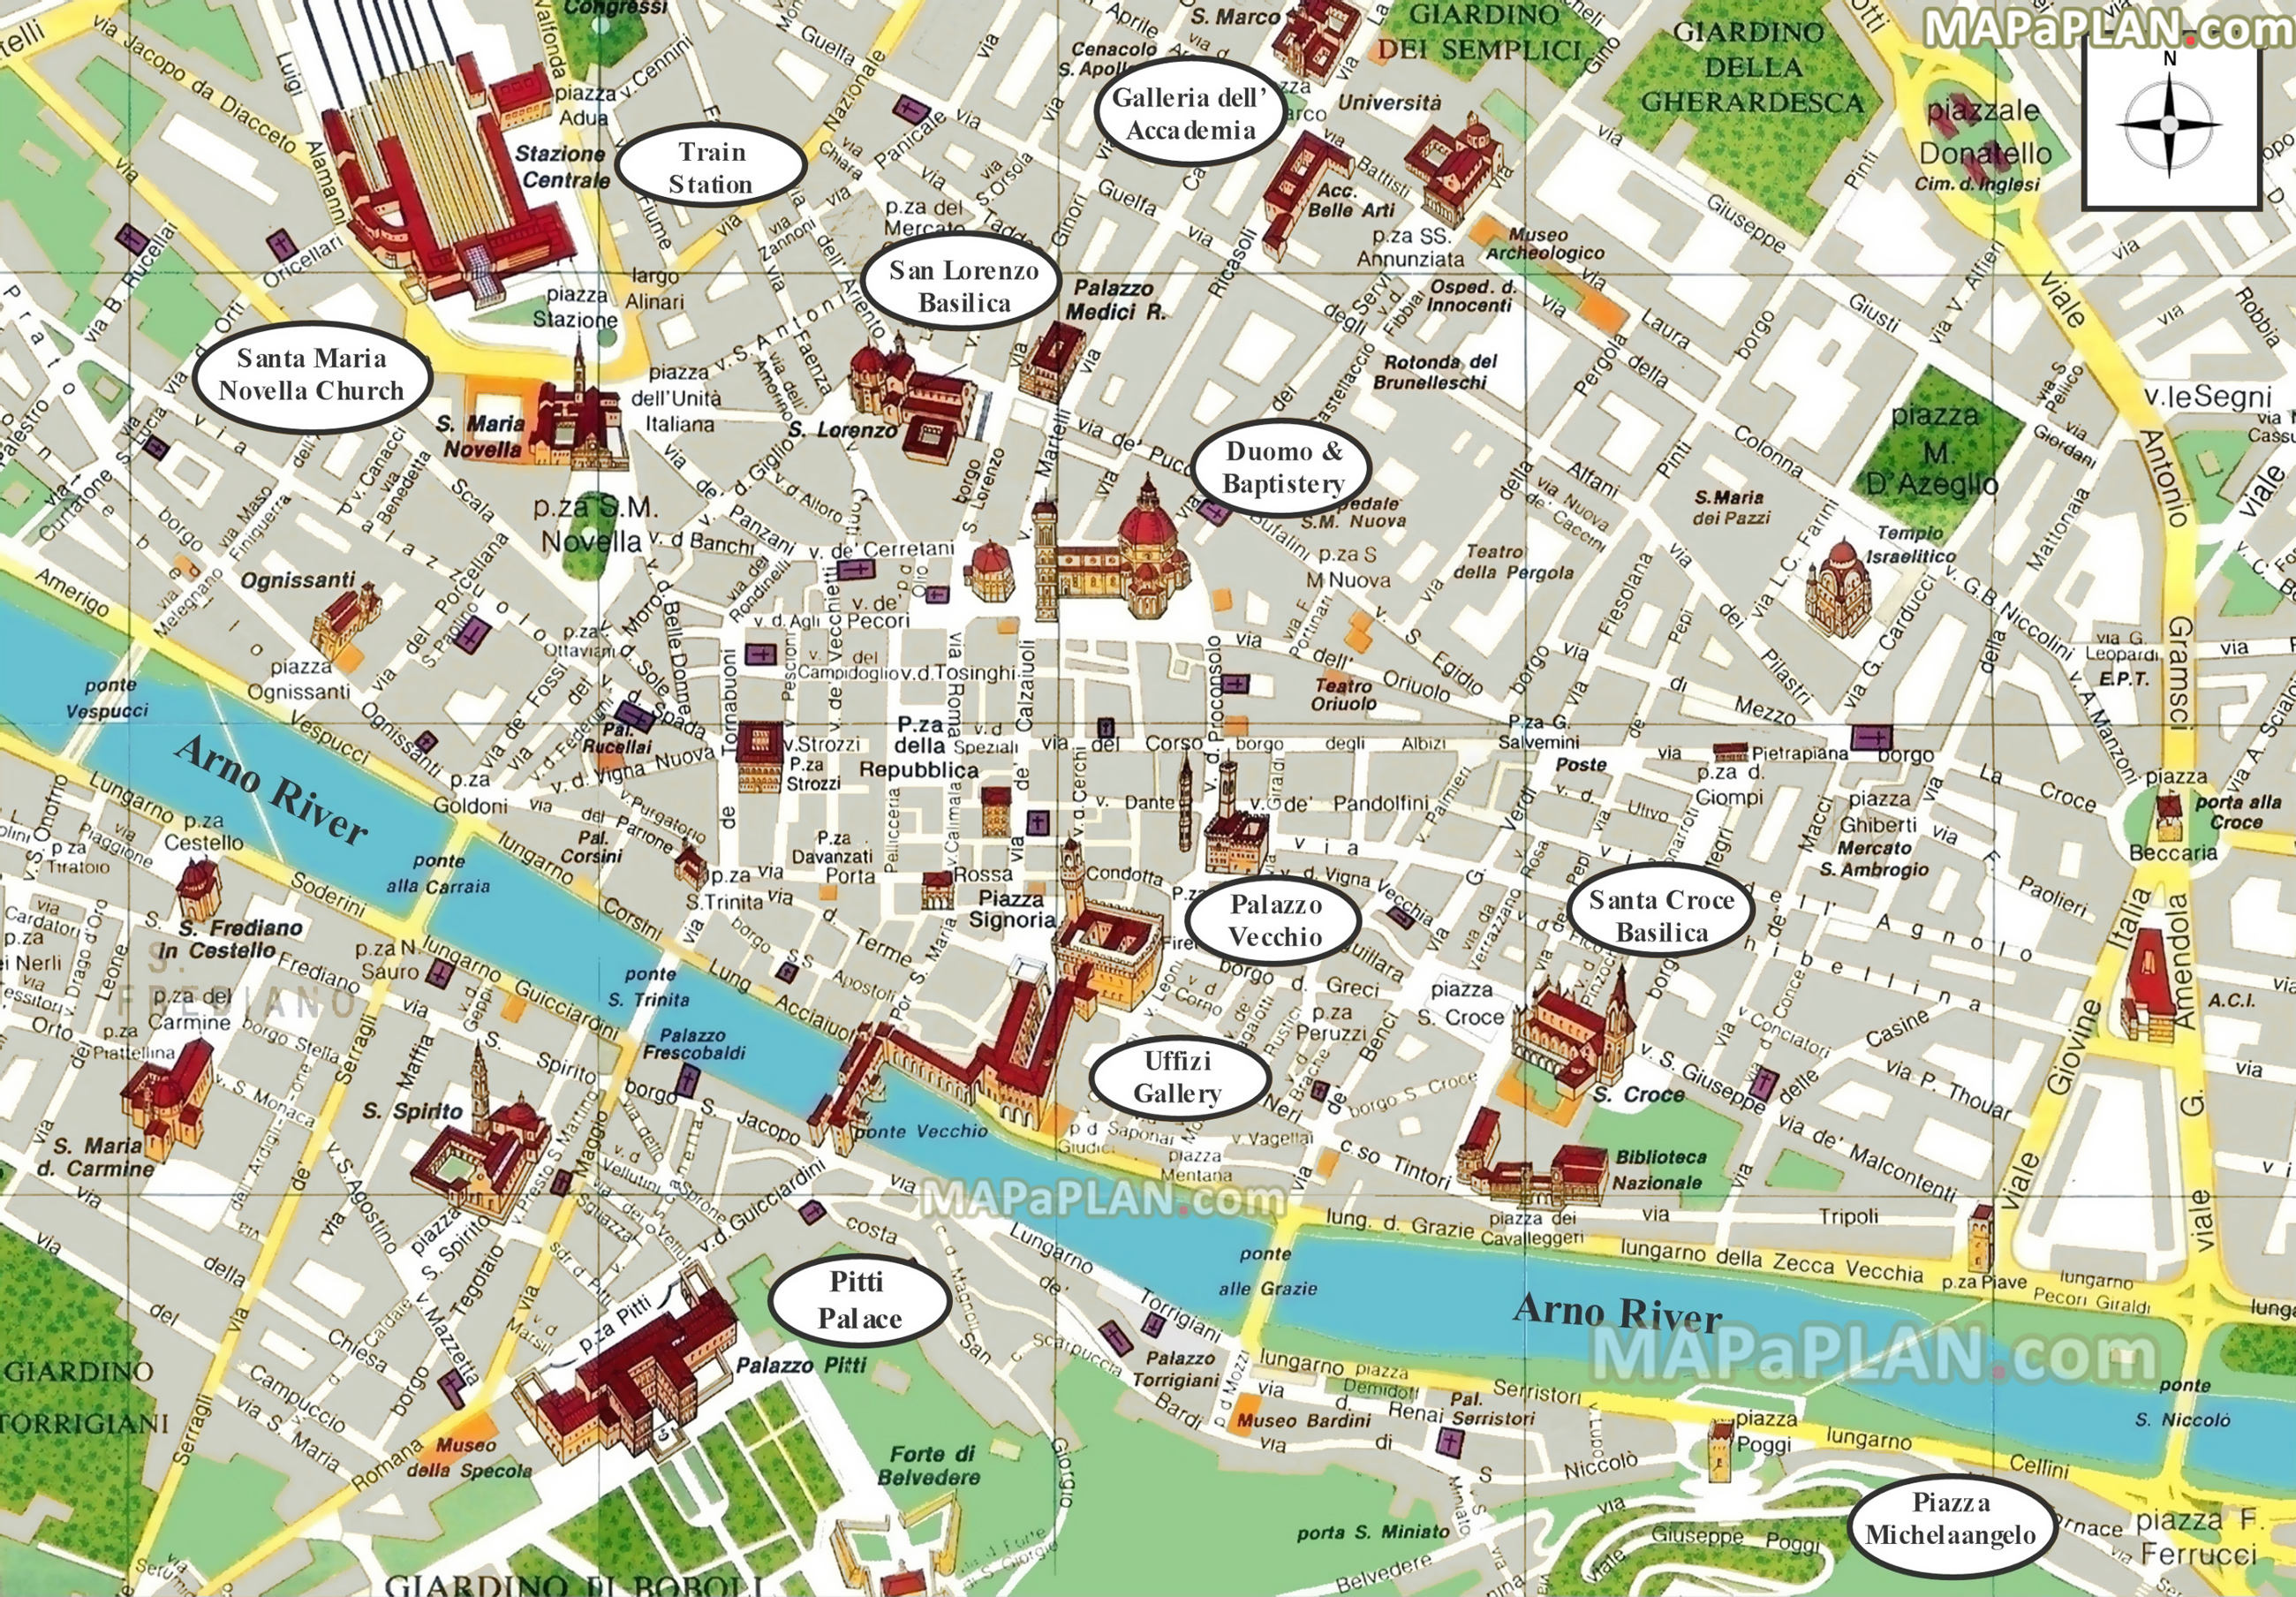 Stadtplan von Florenz mit eingezeichneten Sehenswürdigkeiten - bereitgestellt von http://www.mapaplan.com